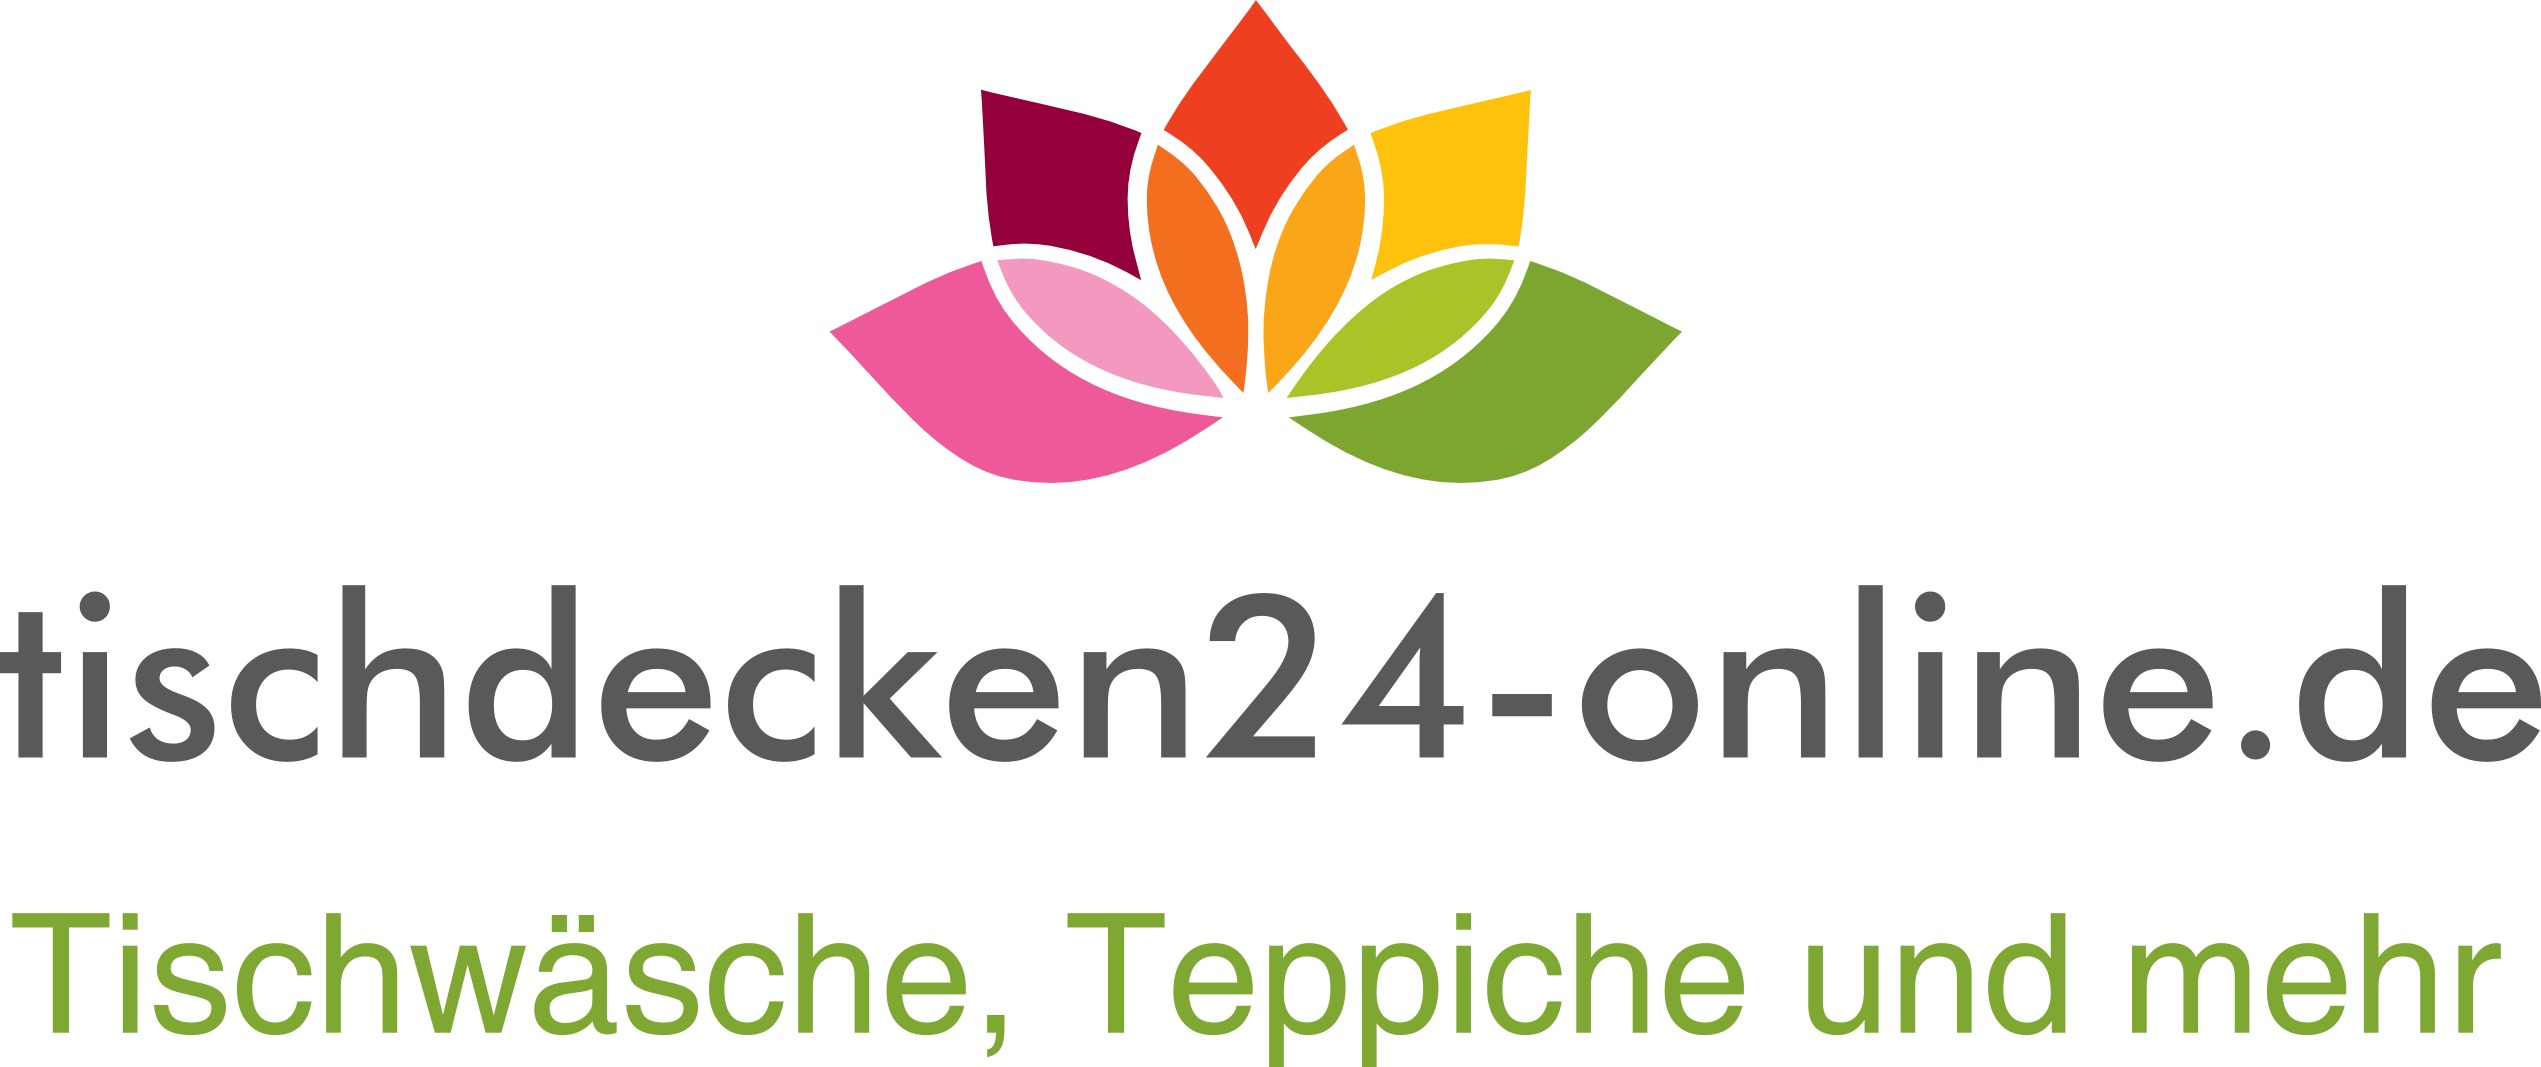 tischdecken24-online.de